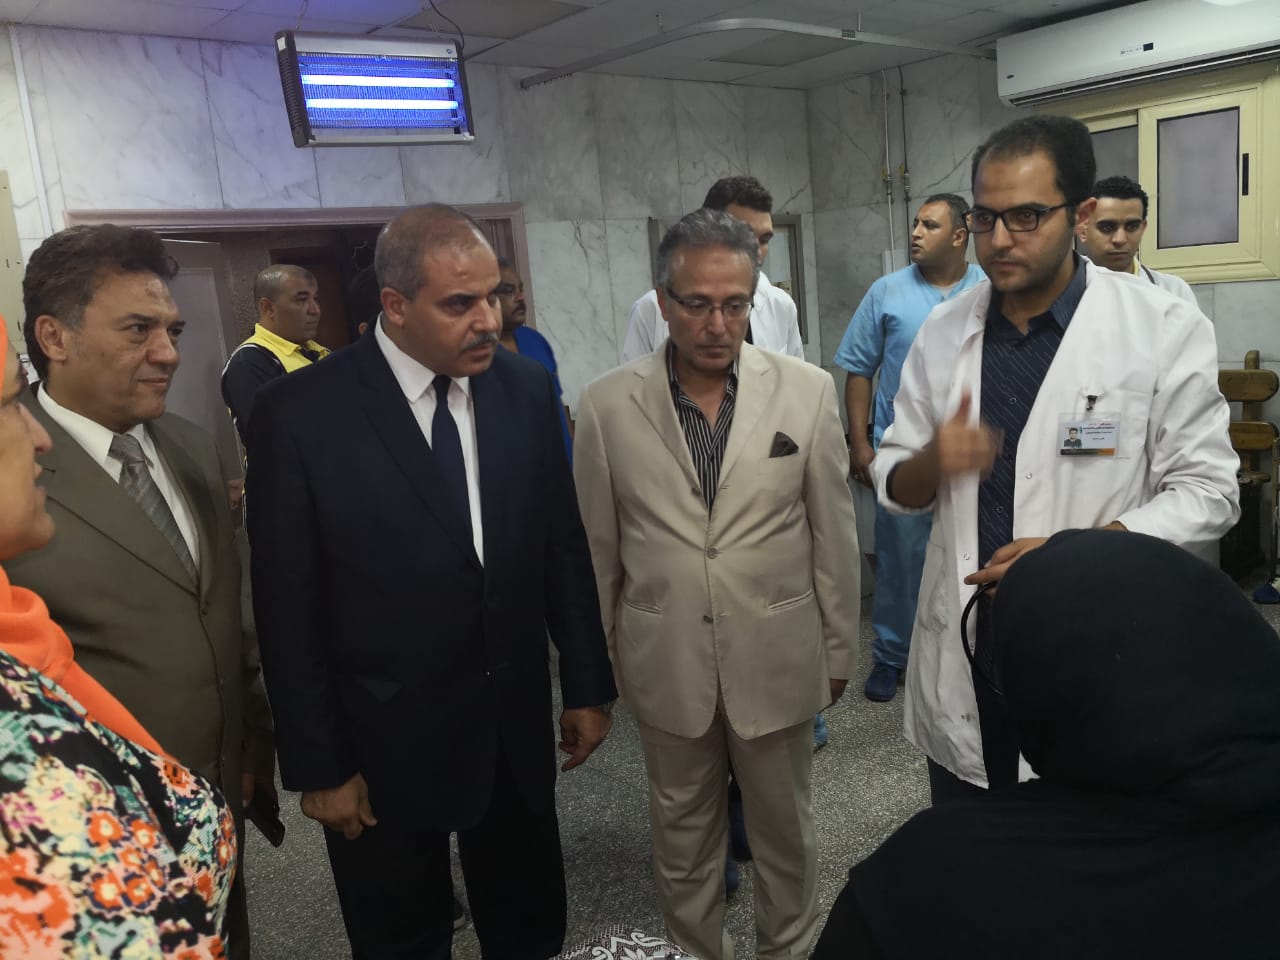 زيارة تفقدية لمستشفى سيد جلال الجامعى  (1)